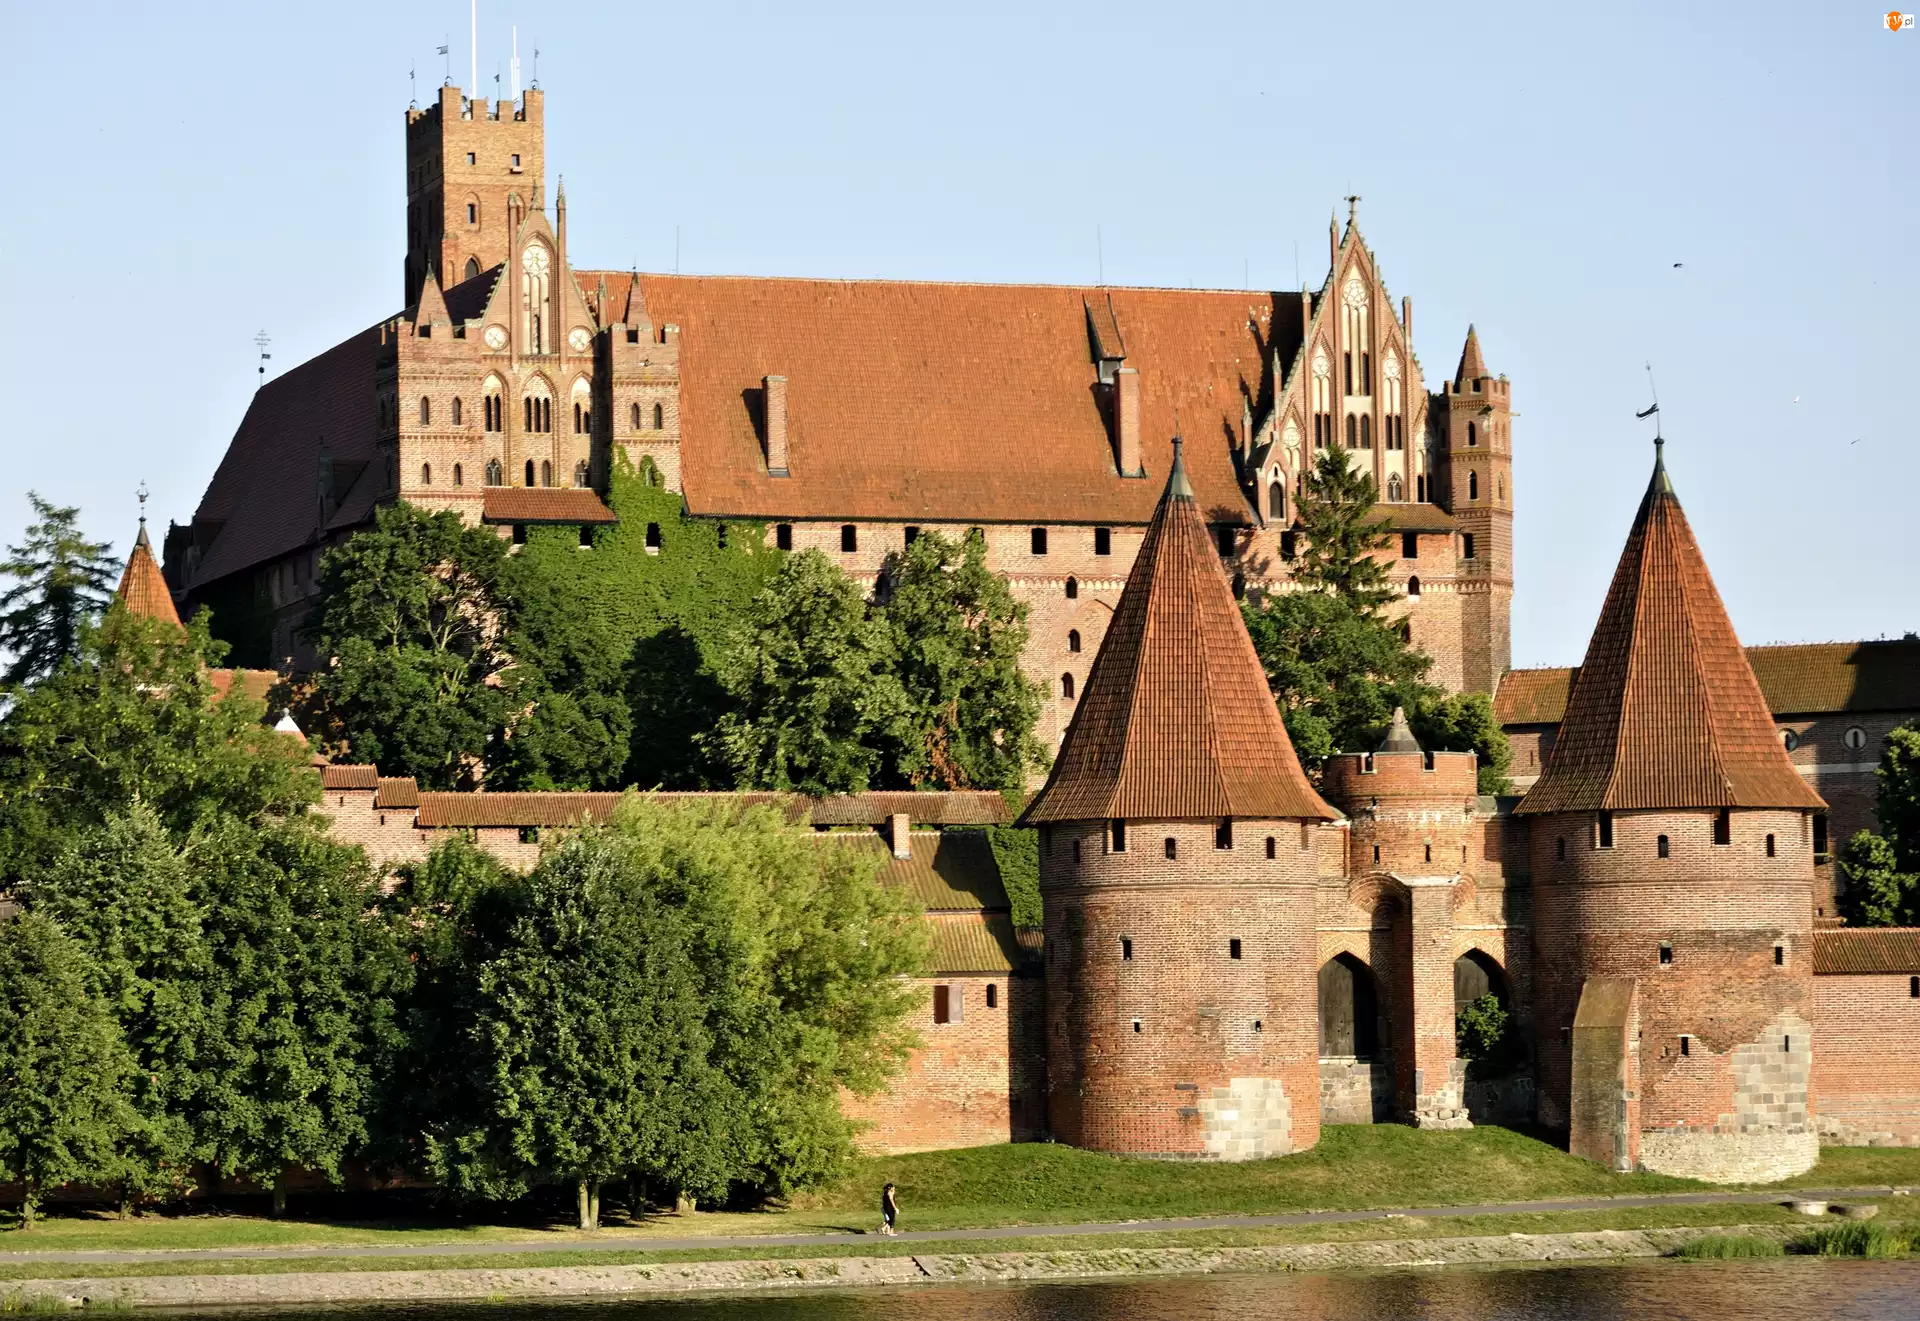 Zamek w Malborku, Polska, Malbork